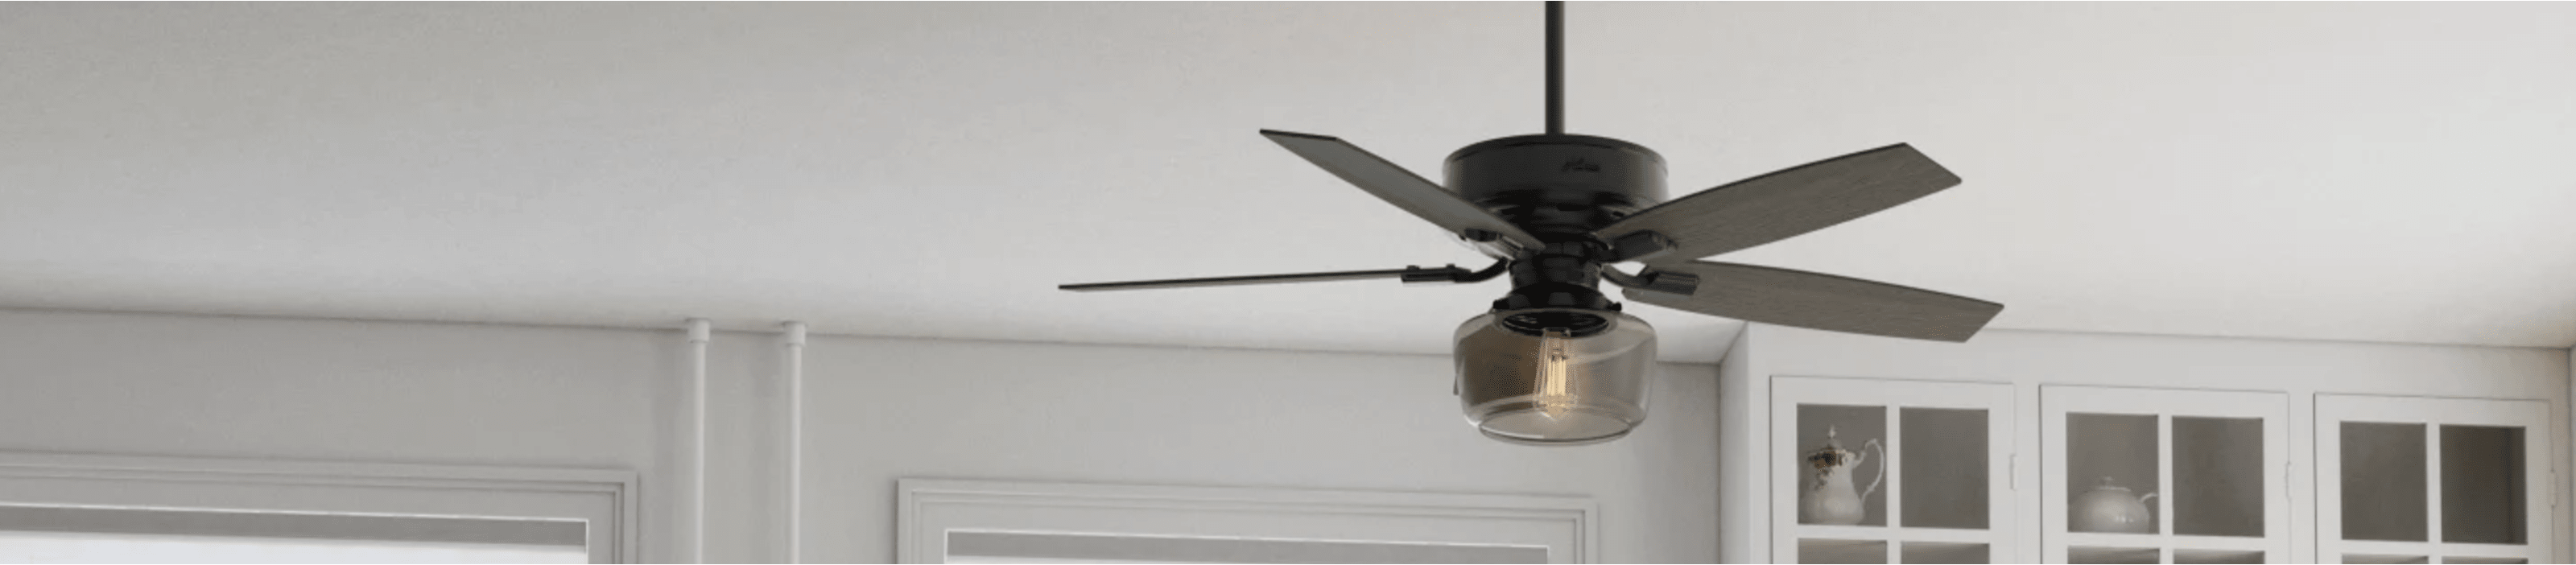 Ceiling Fan Light Kits